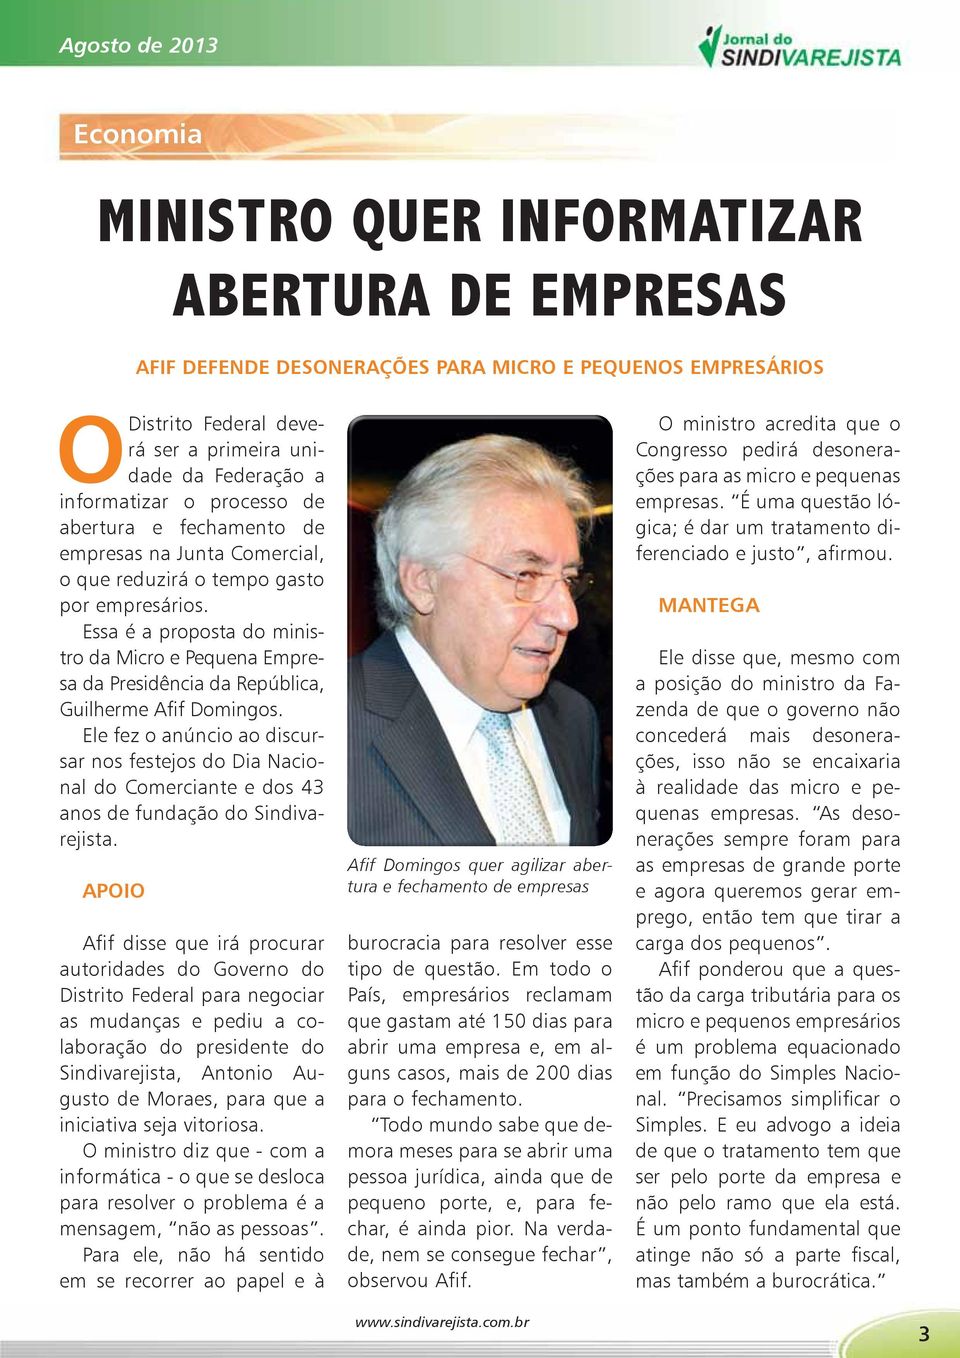 Essa é a proposta do ministro da Micro e Pequena Empresa da Presidência da República, Guilherme Afif Domingos.